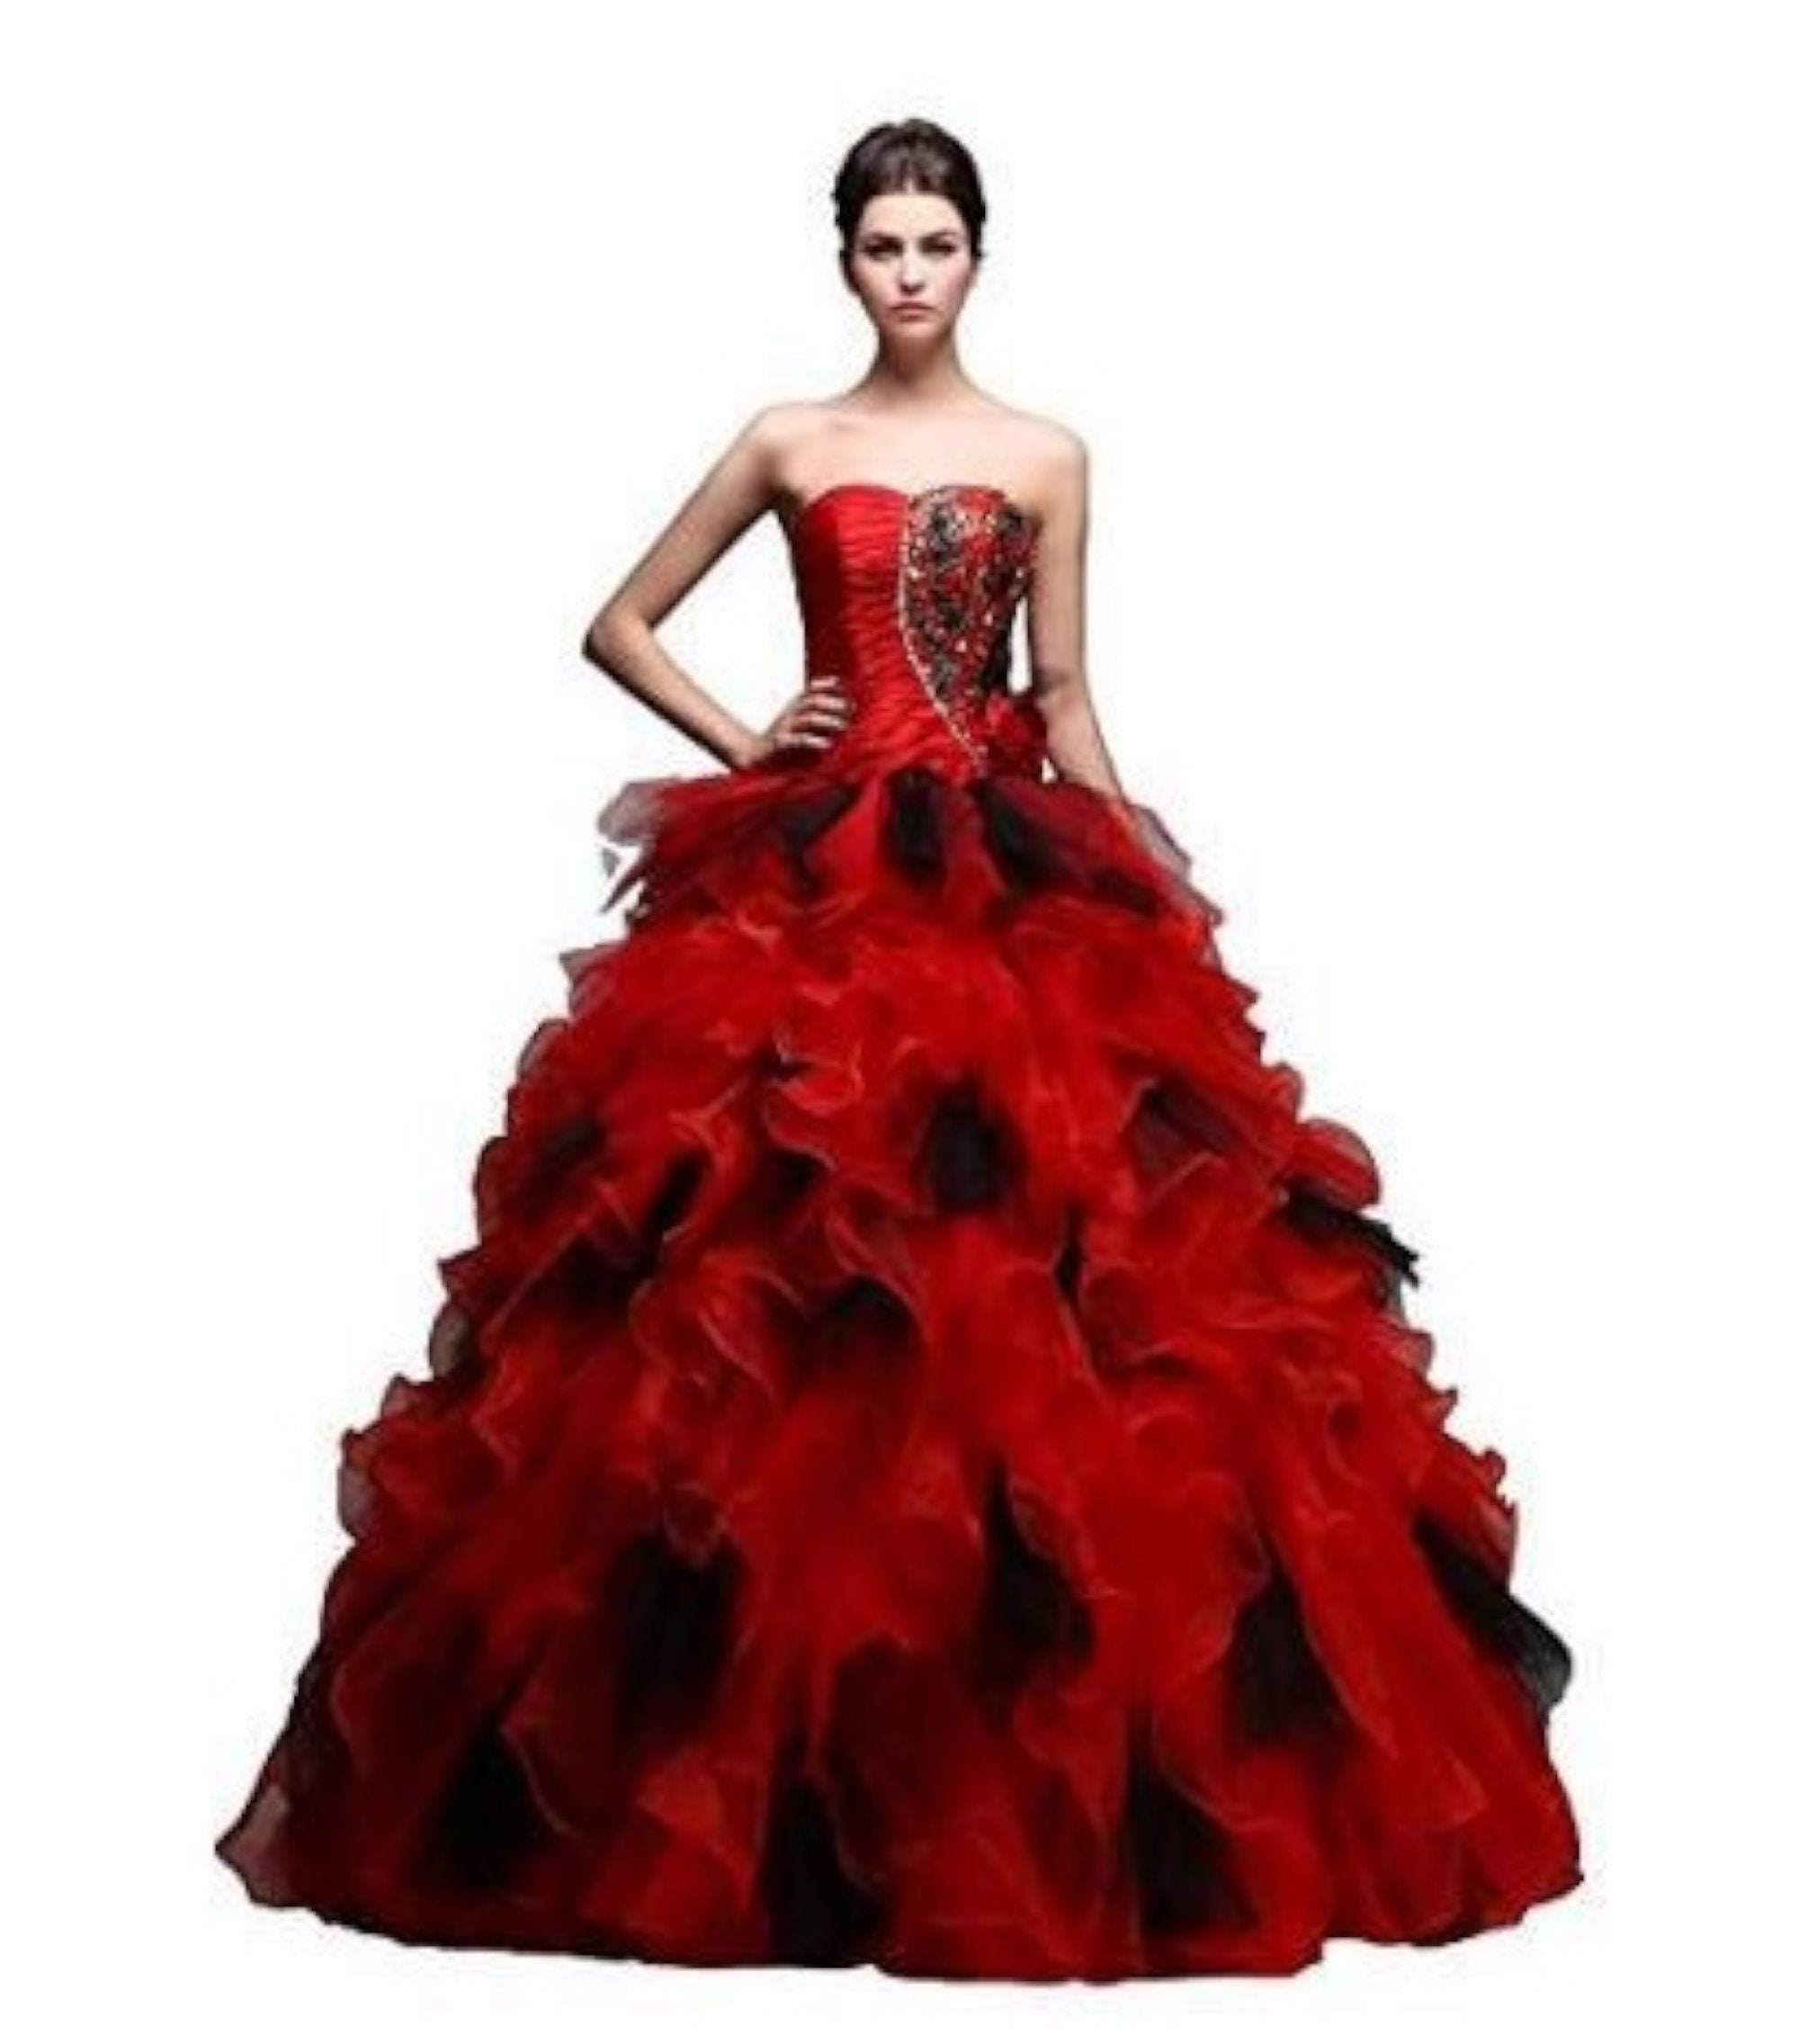 Unusual Red & Black Gothic Wedding Ballgown Bridal Evening | Etsy